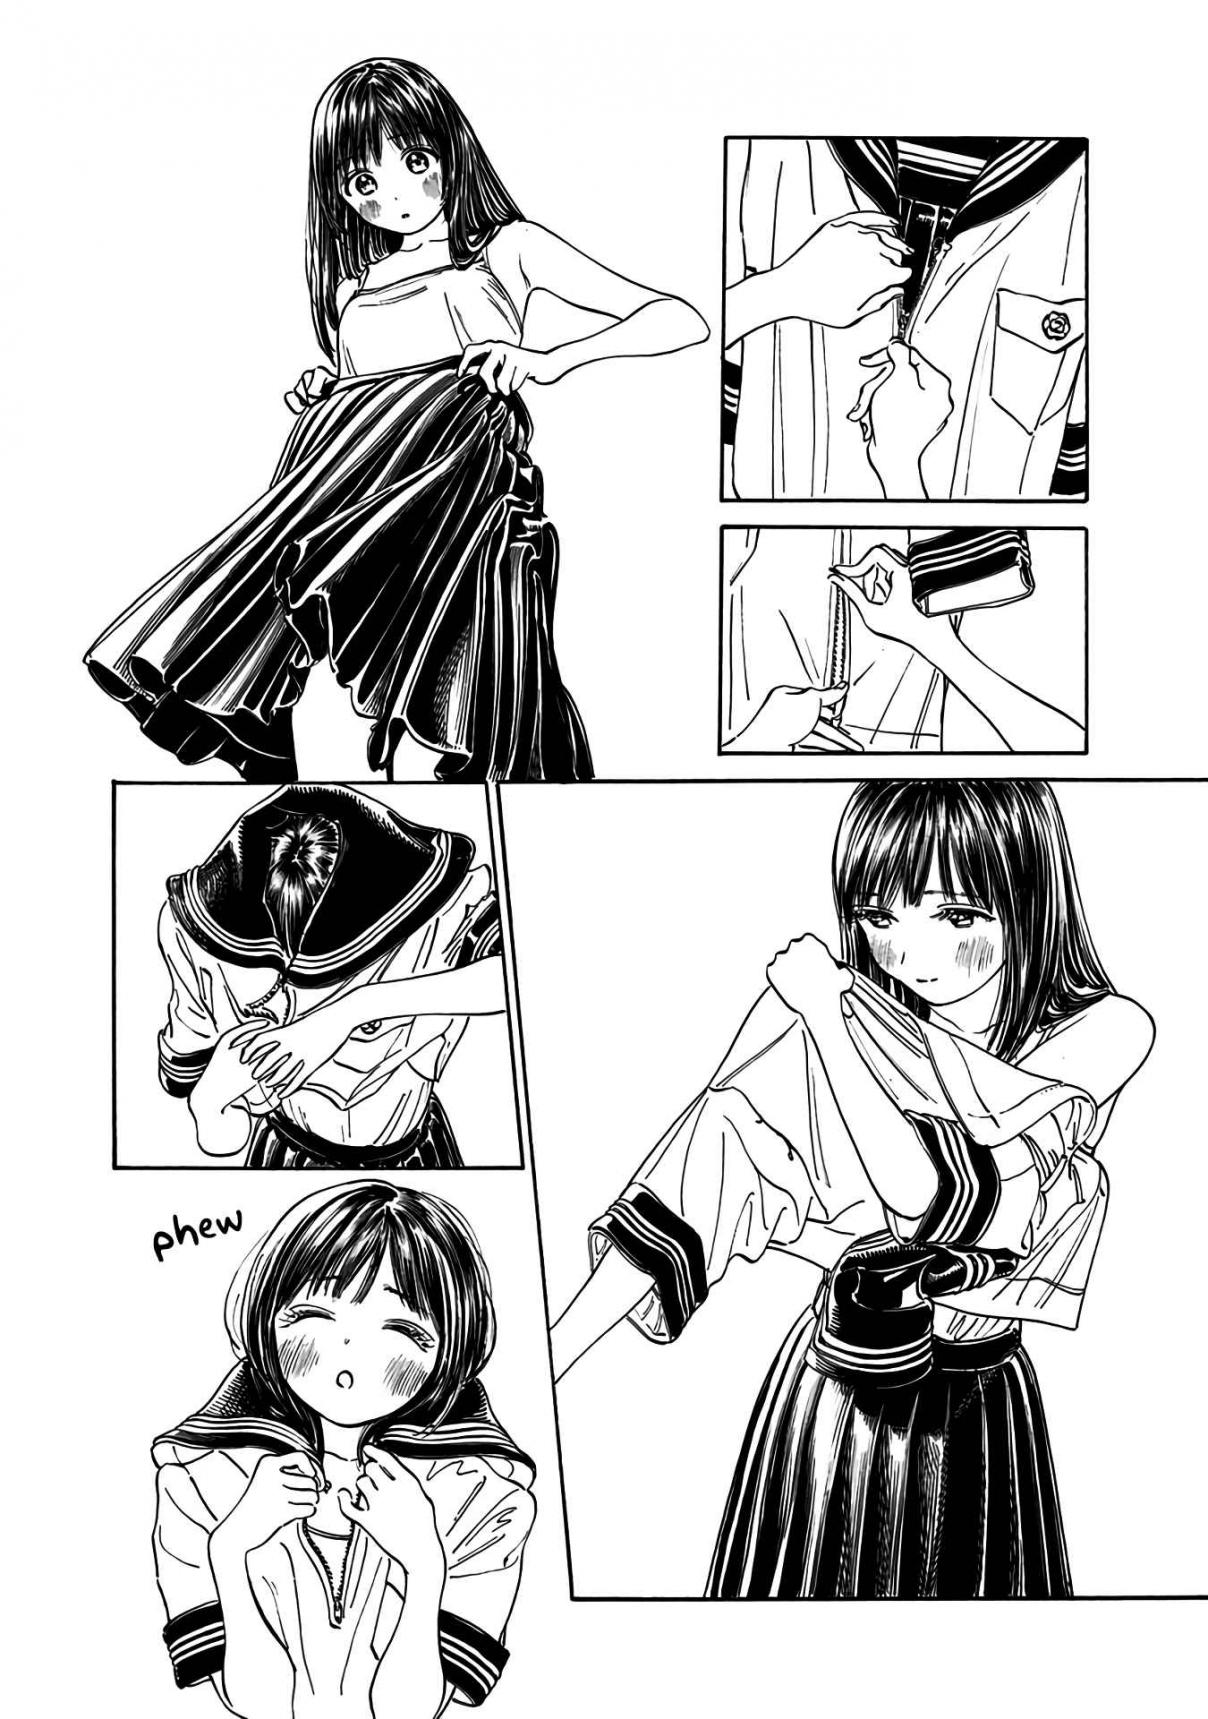 Akebi chan no Sailor Fuku Vol. 3 Ch. 16 Can I Really Wear This?